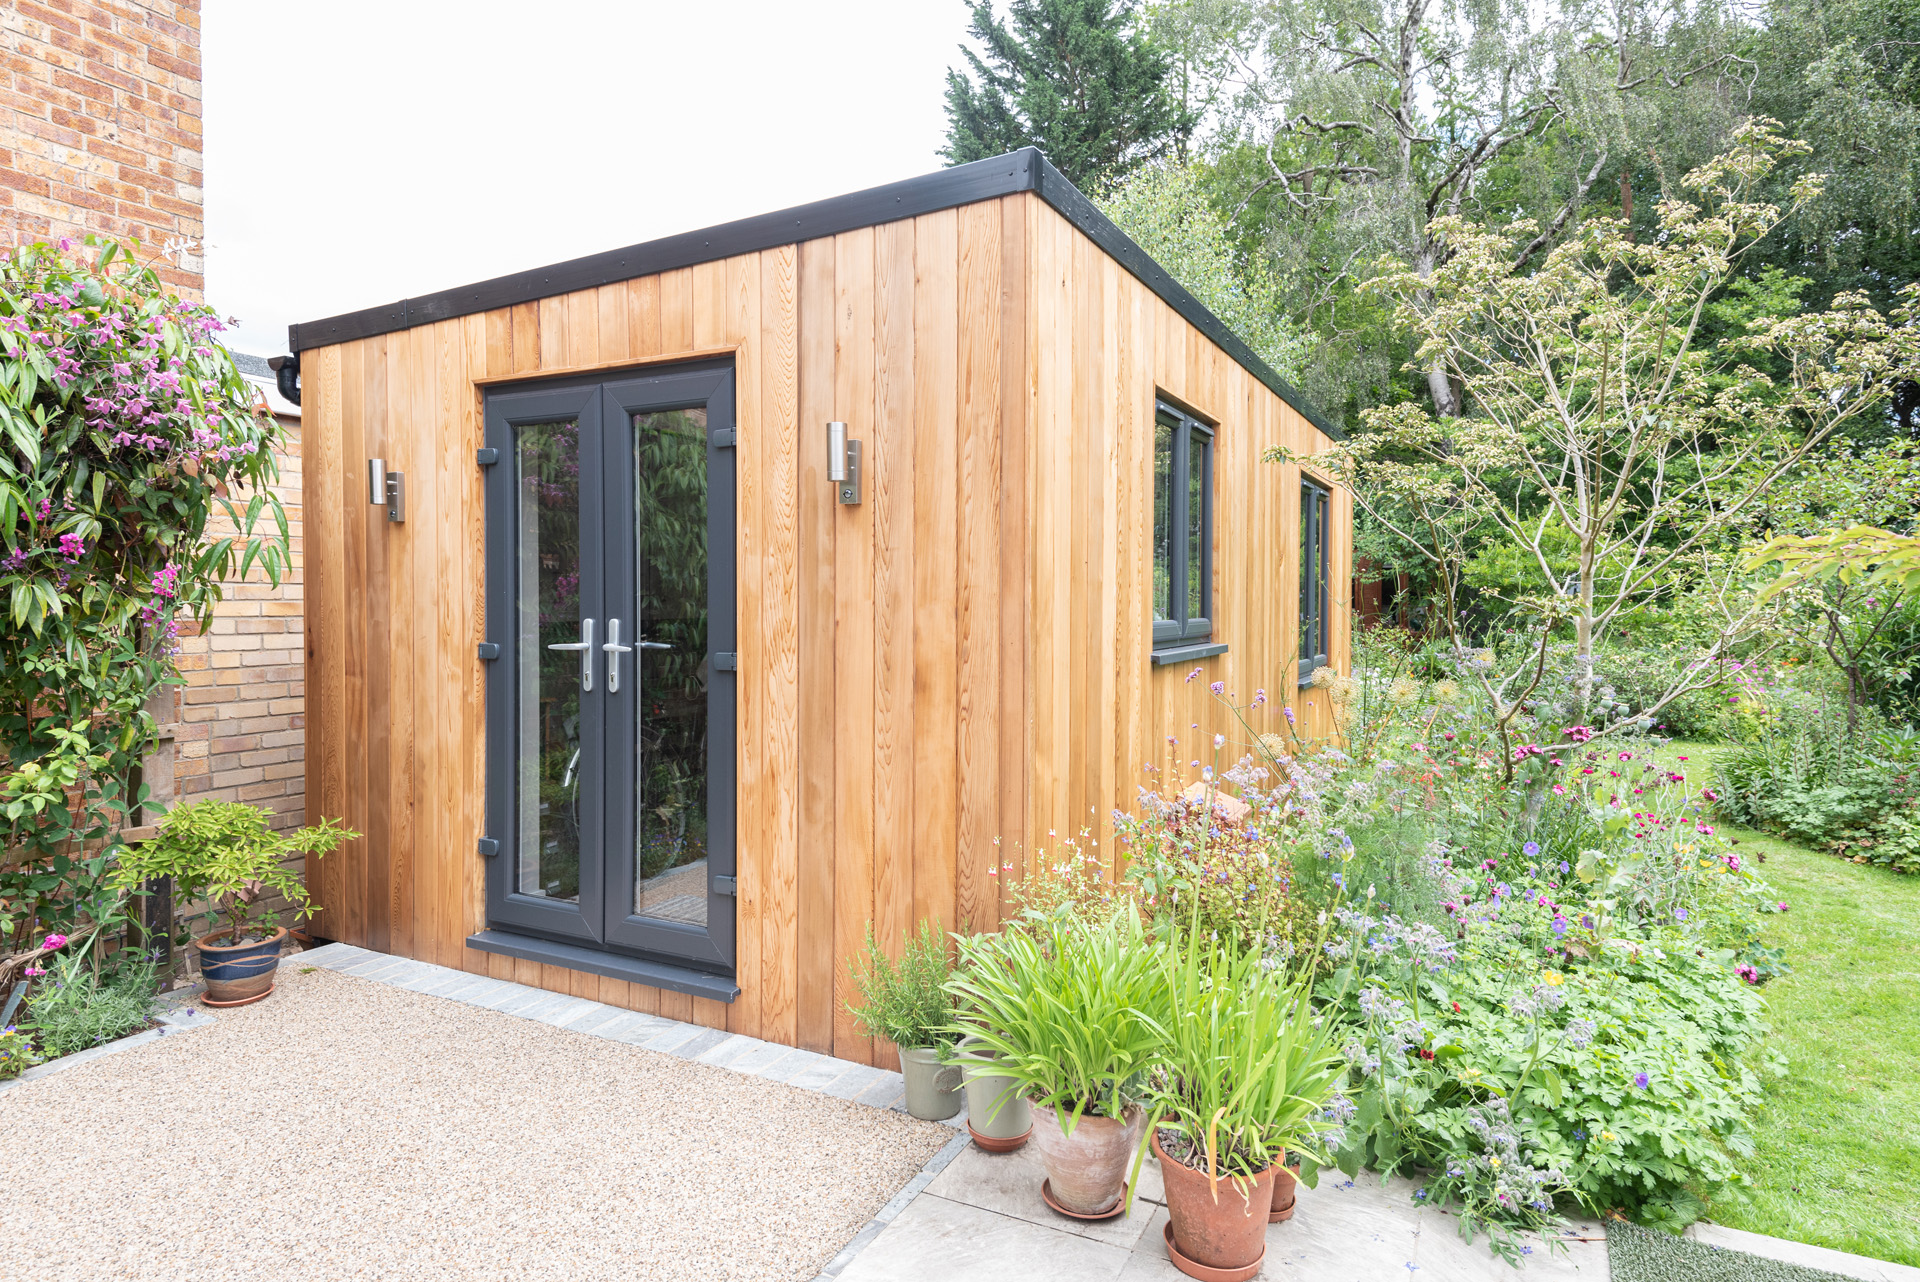 Garden room studio in Shenfield, Essex